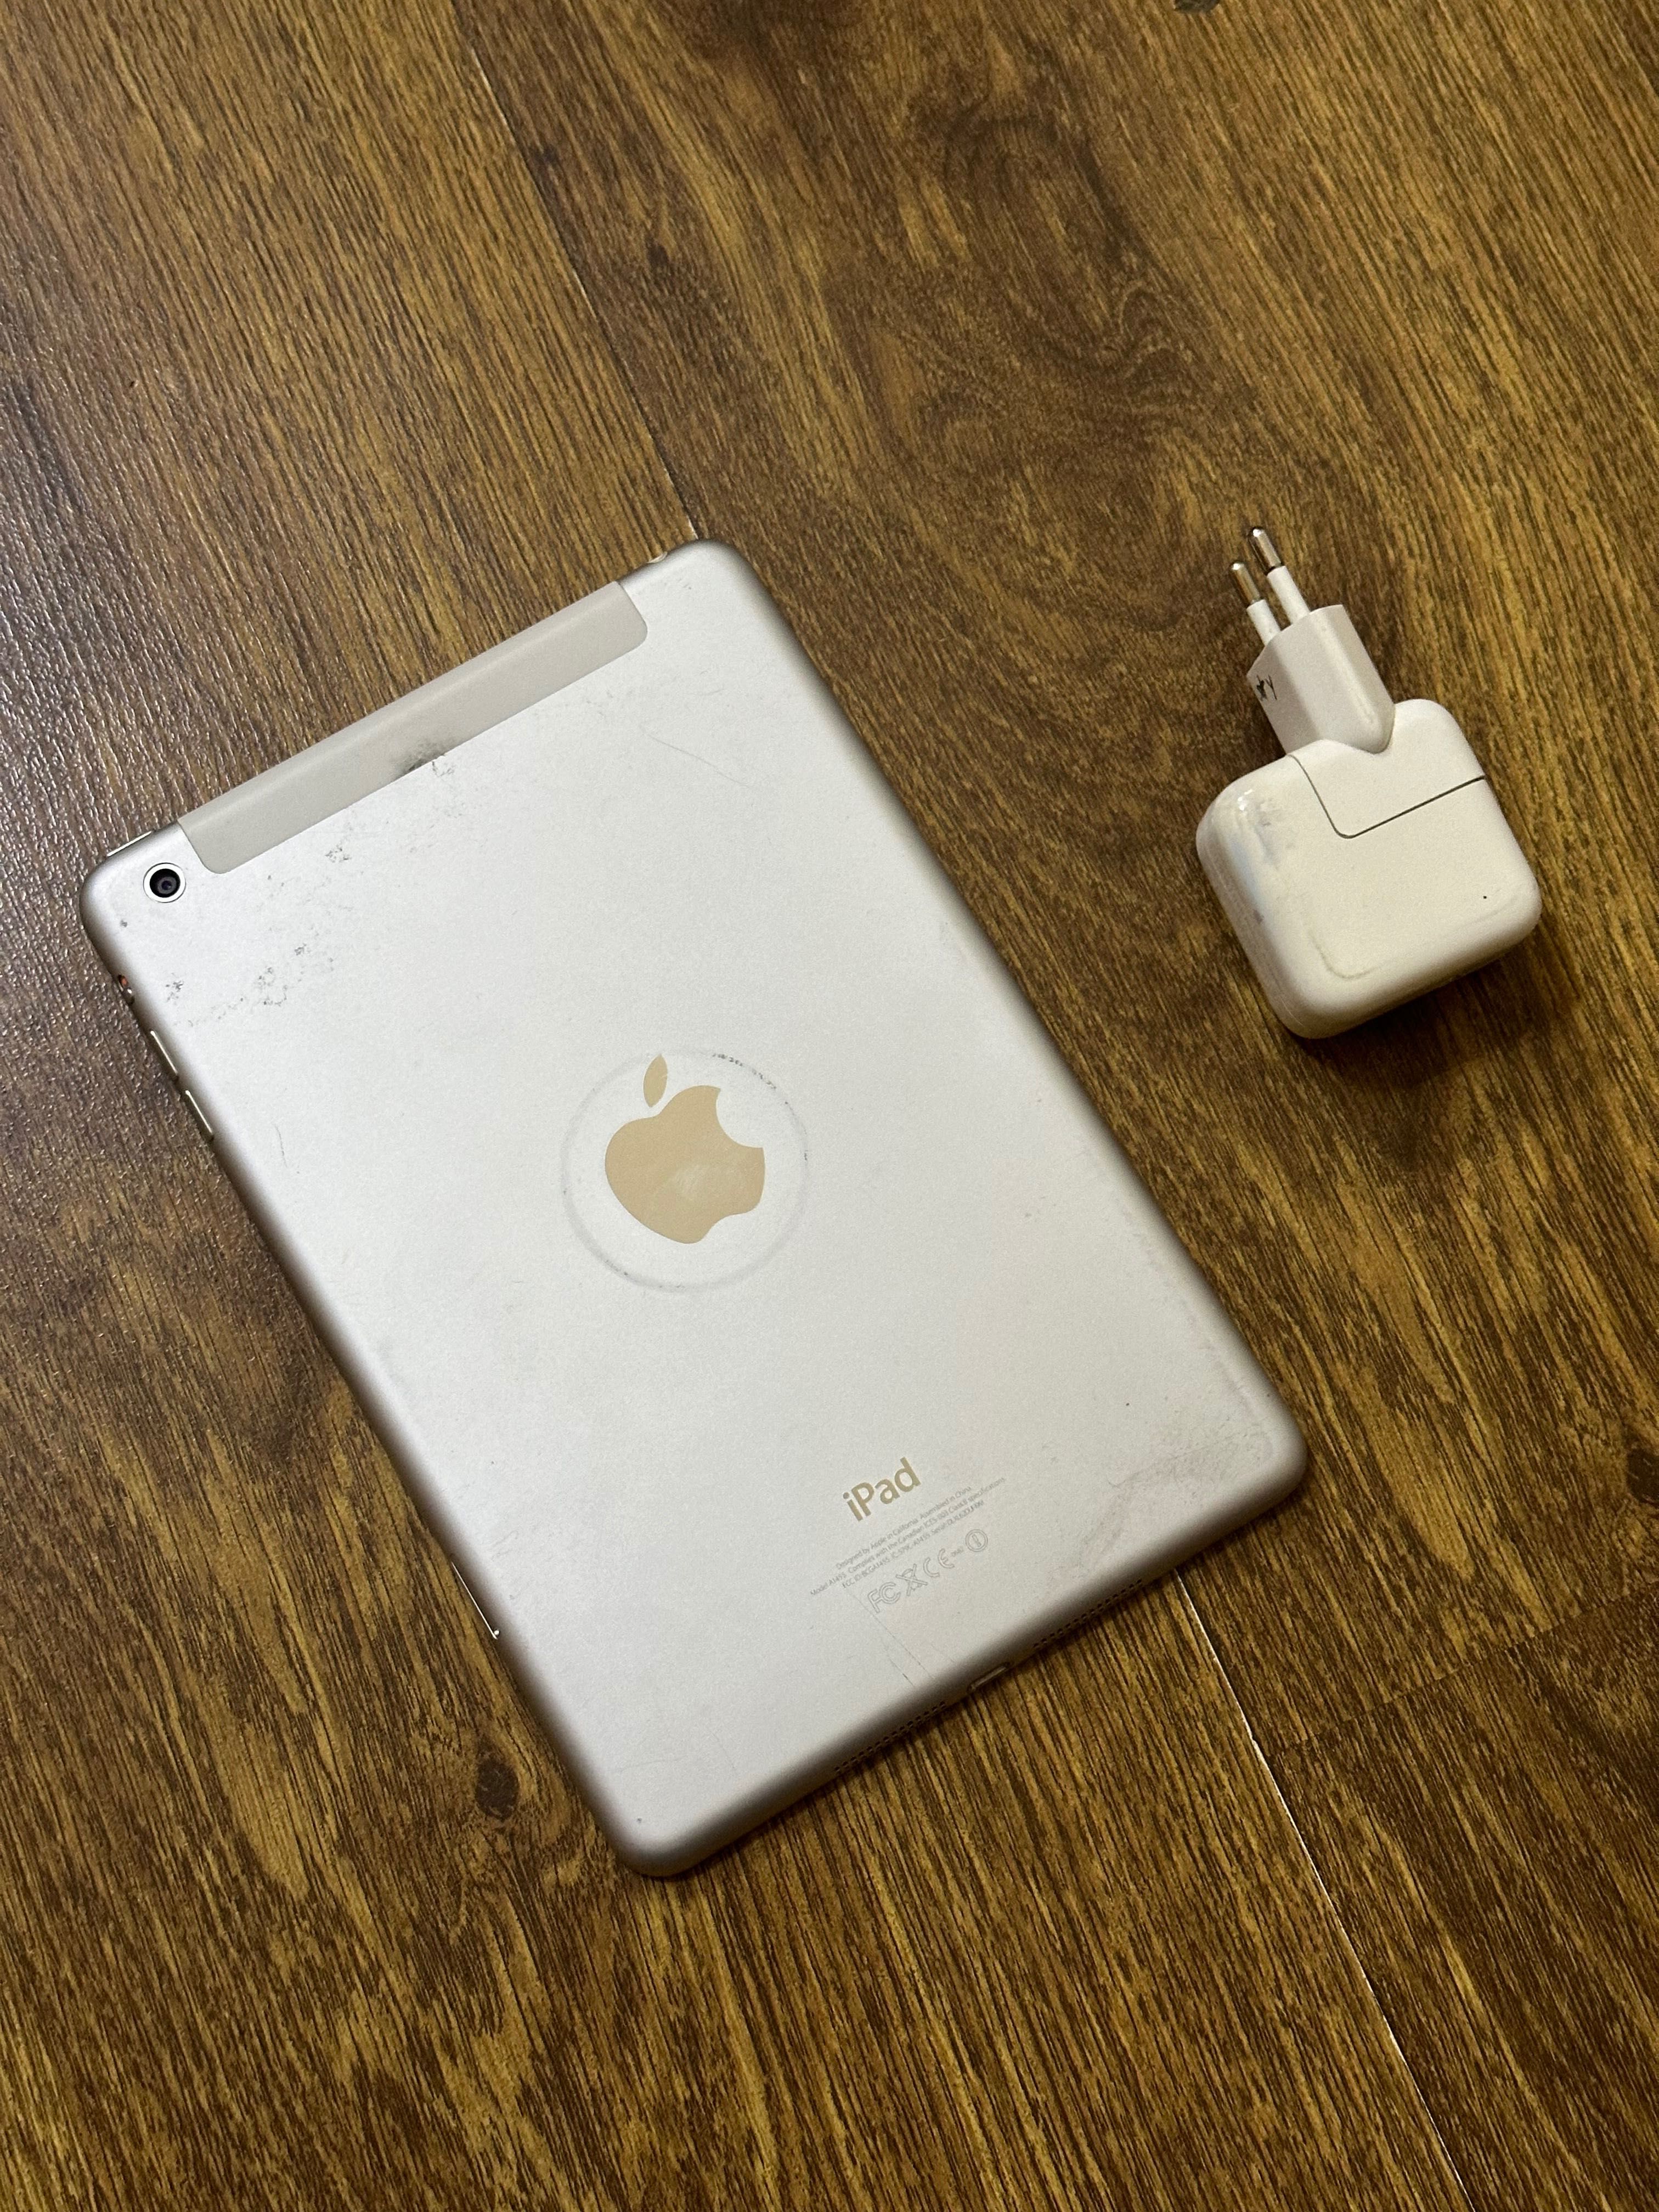 iPad mini 1, 16gb (Wi-Fi + Cellular, MM)